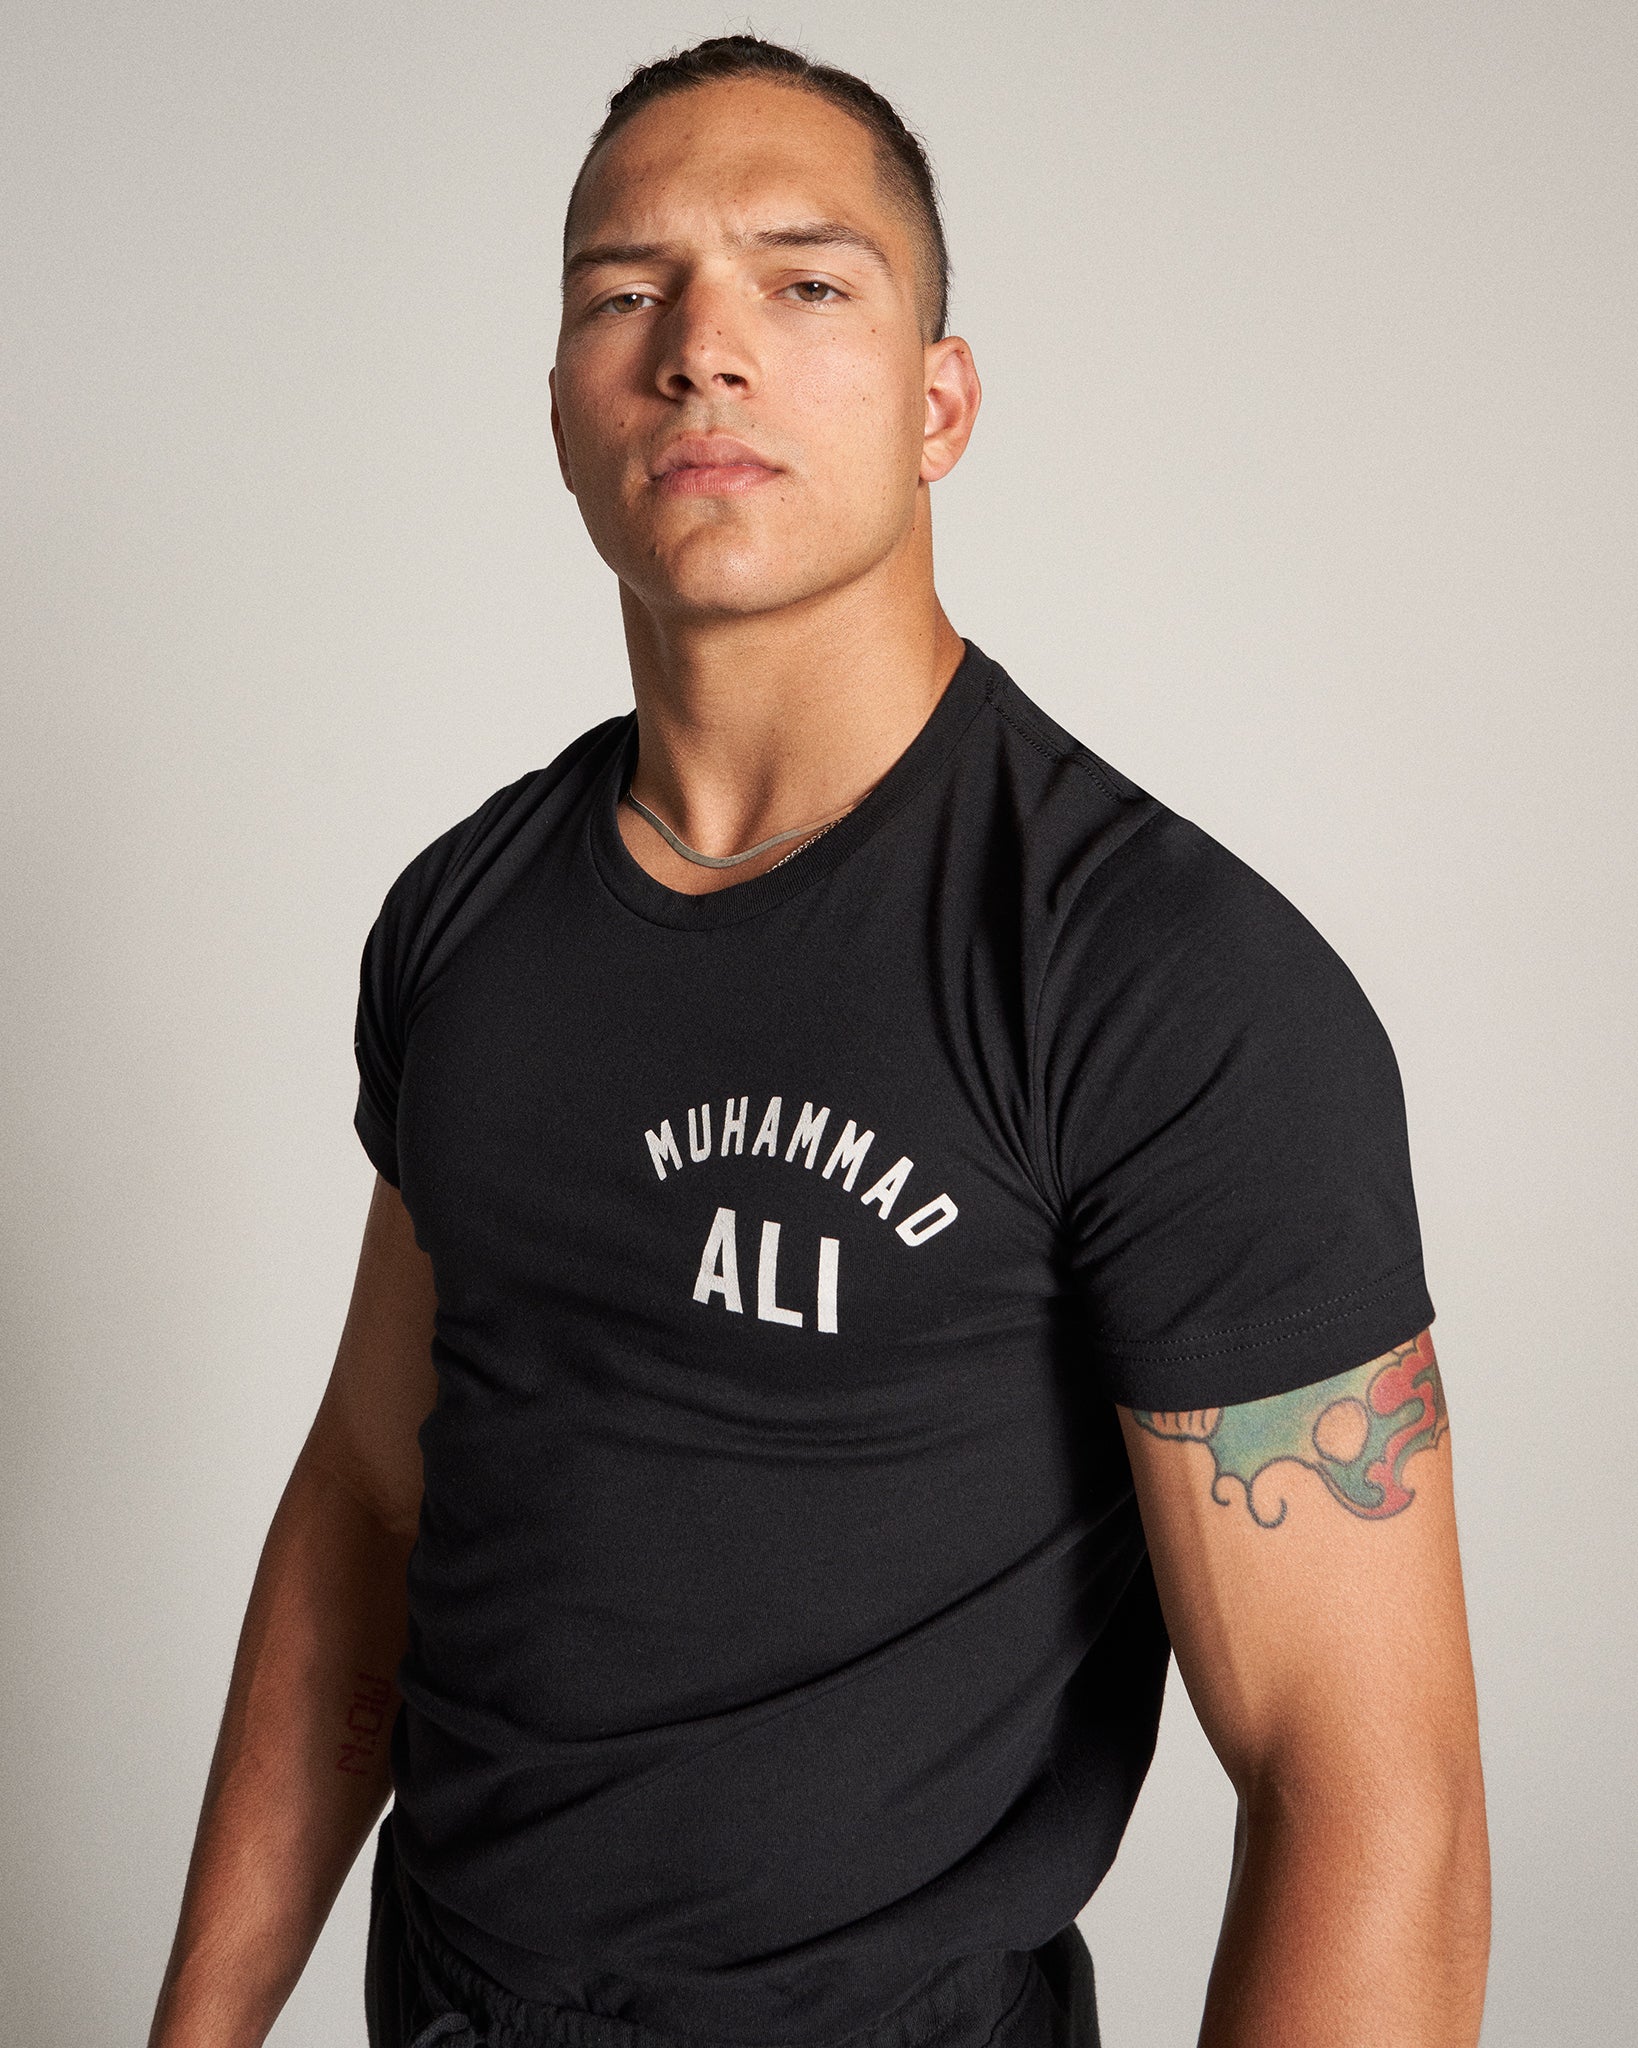 Muhammad Ali King of the Ring T-Shirt | RUDIS